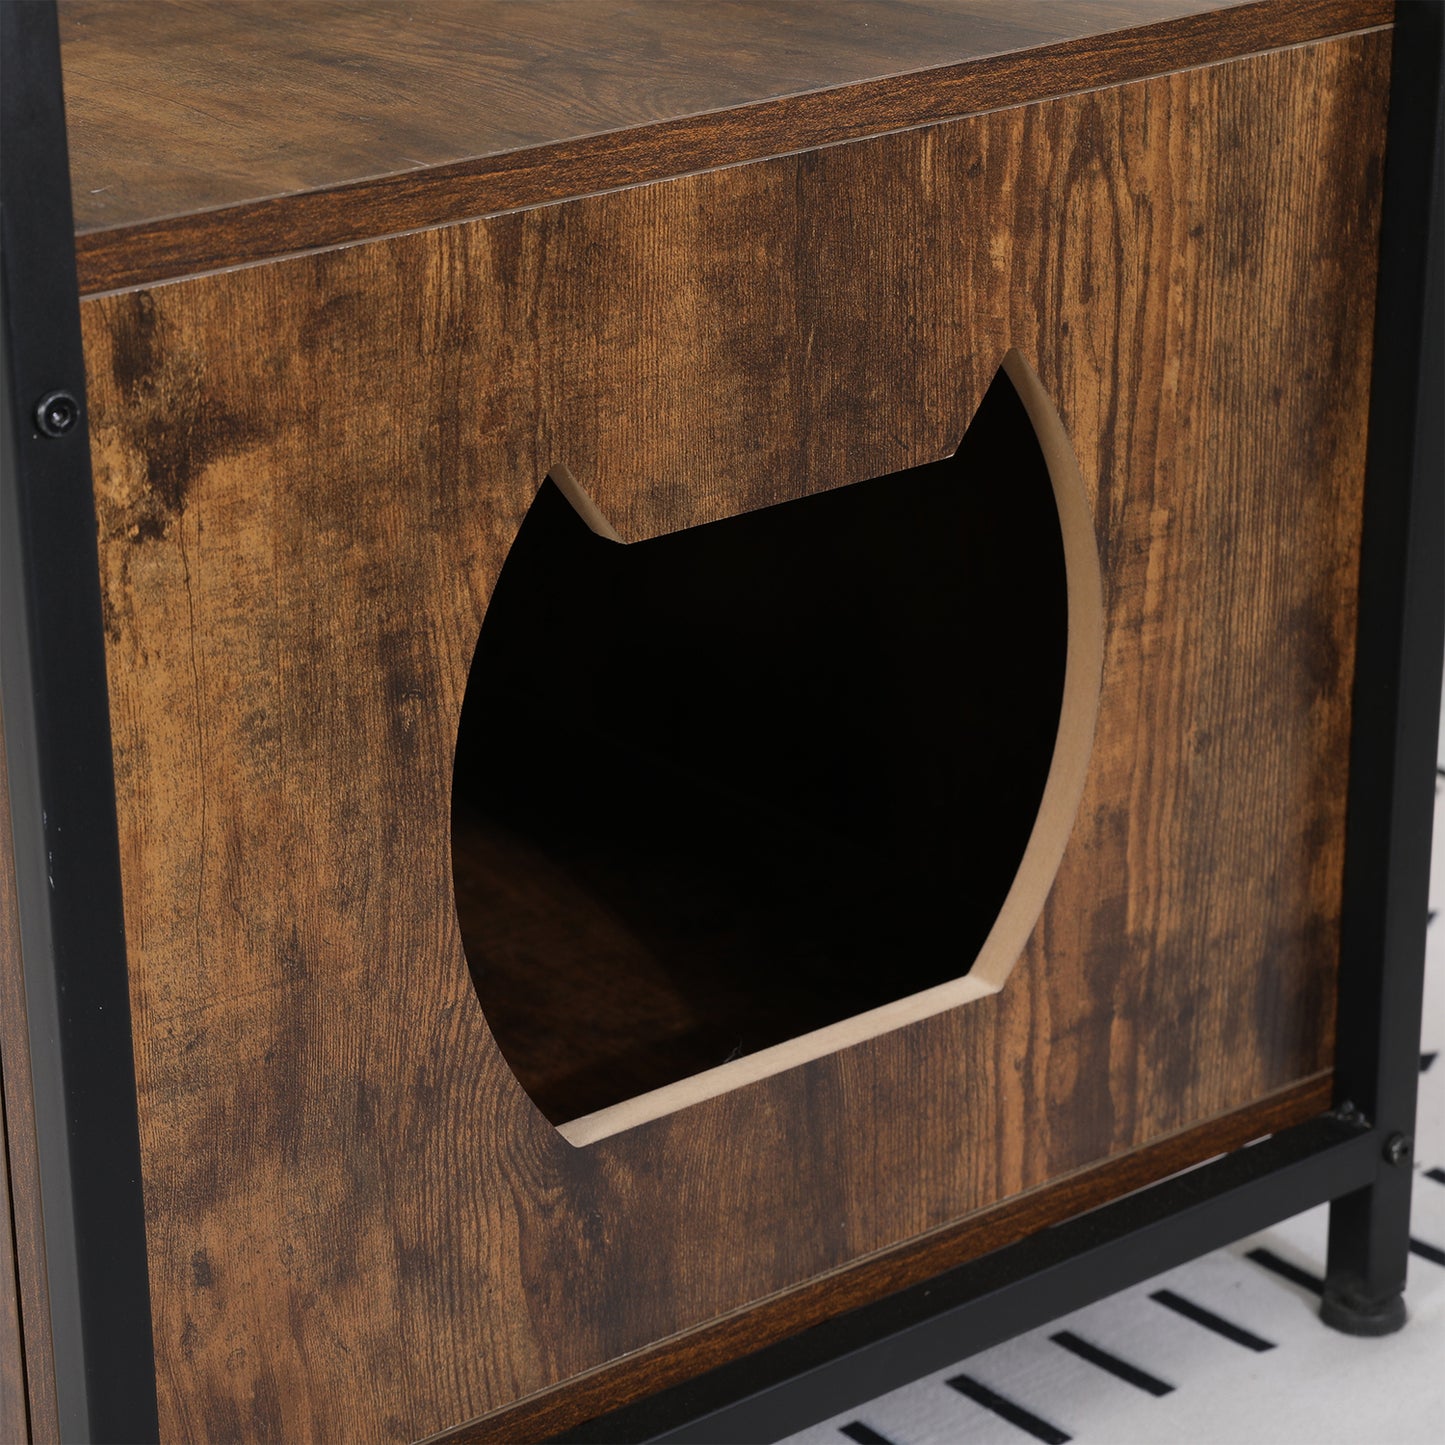 Anysun 30 Inches Cat Litter Box Enclosure Modern Cat Furniture - Rustic Brown